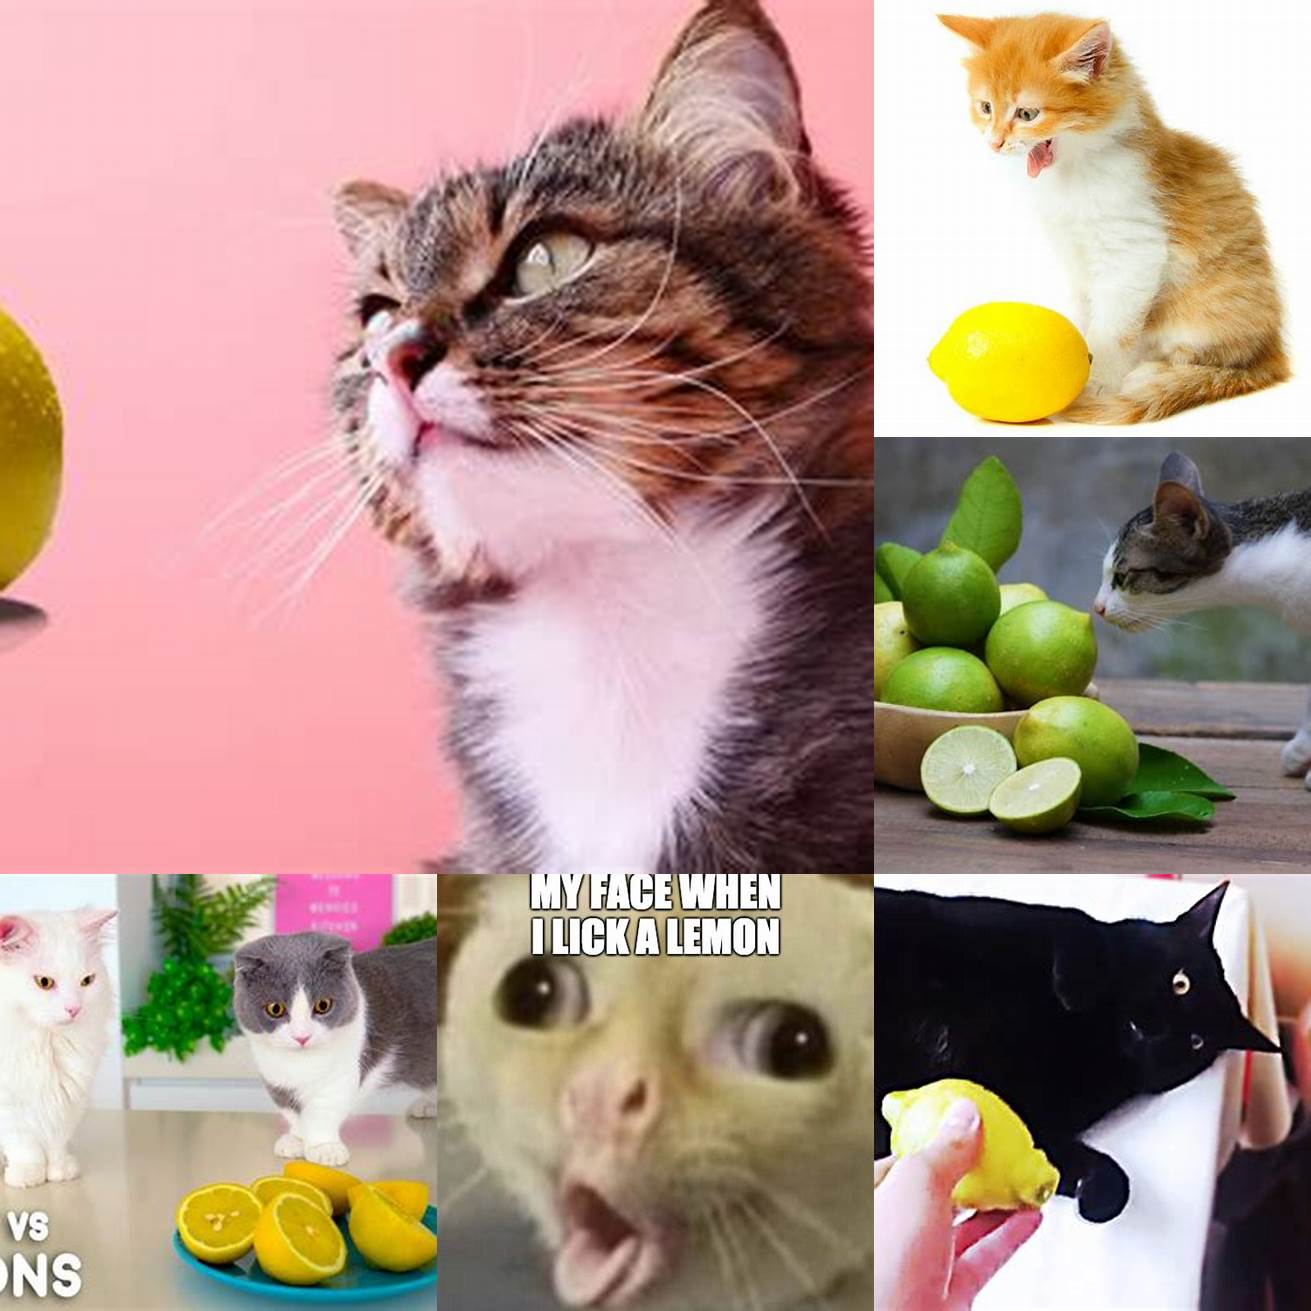 Cat tasting a lemon